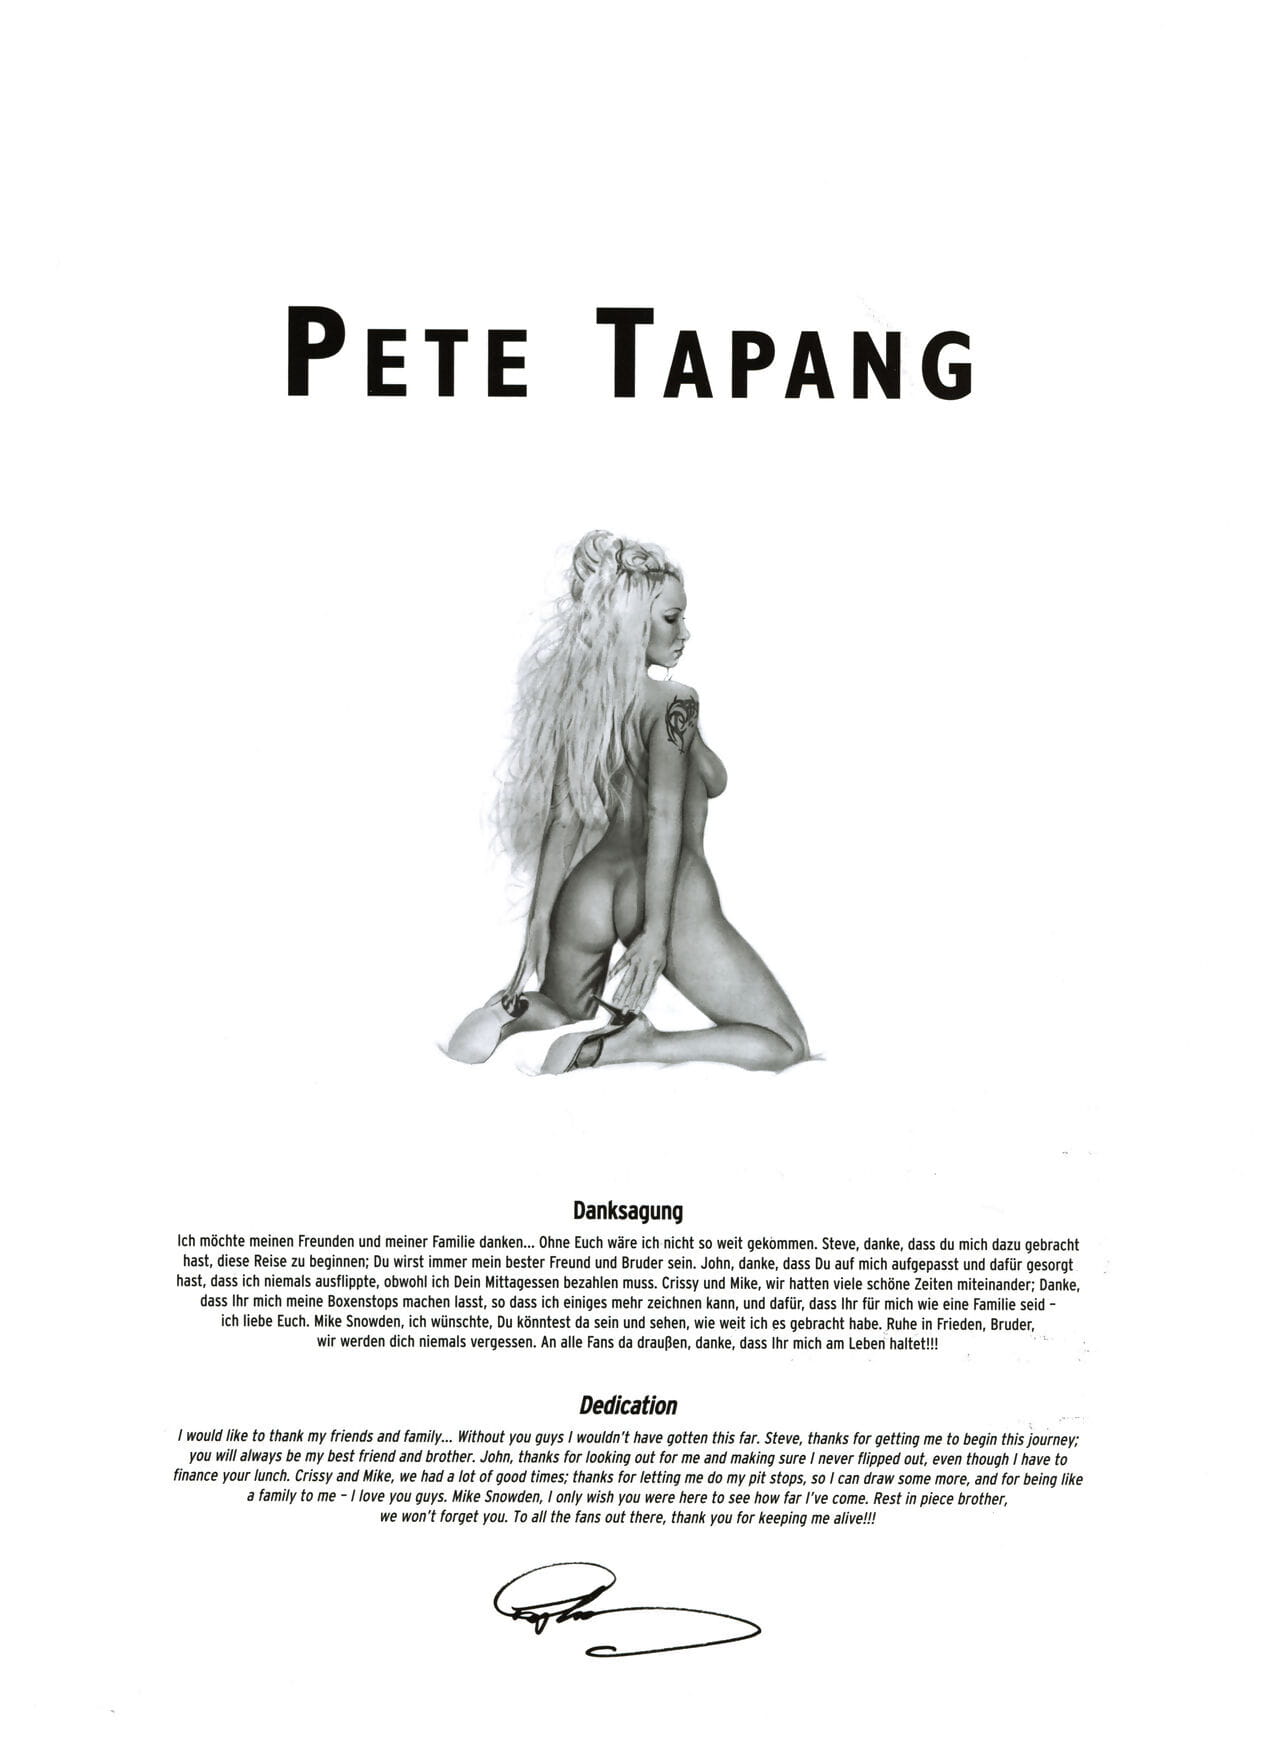 Art Premiere #11 - Pete Tapang page 1